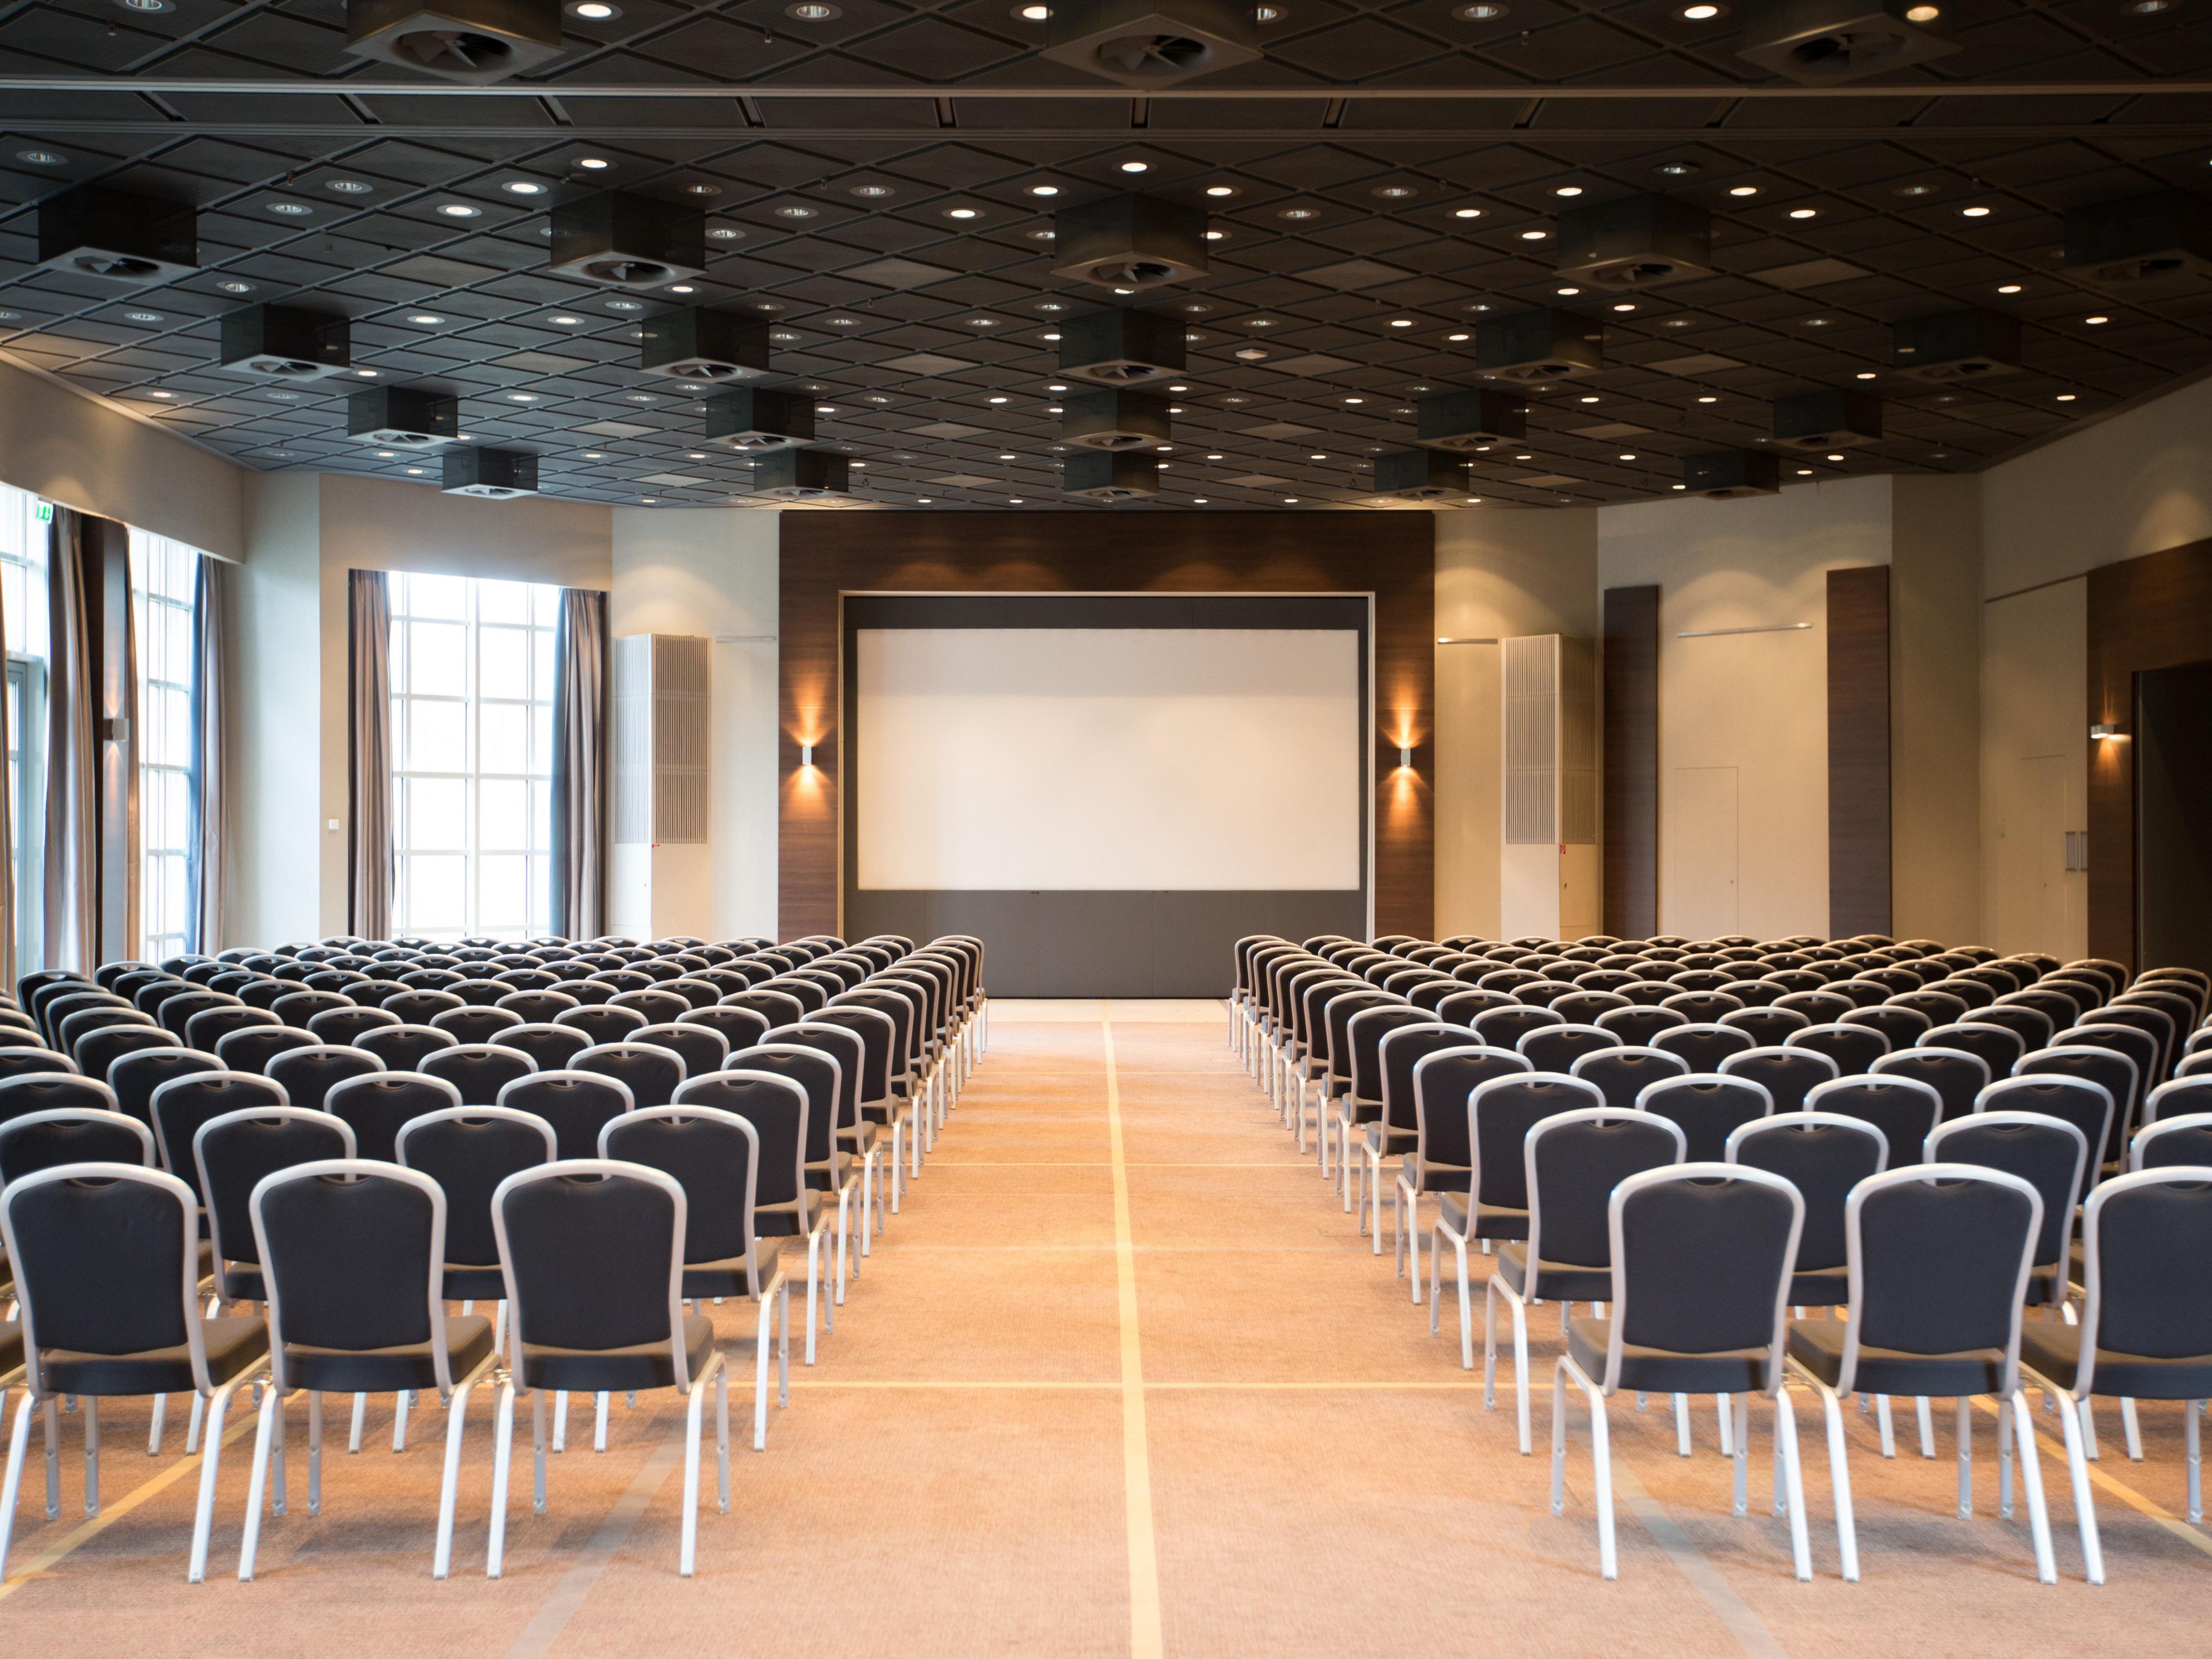 Sie sind ein Meeting- und Veranstaltungsplaner? Wir sind das drittgrößte Veranstaltungshotel in der Region Frankfurt, ausgestattet mit einem Tageslicht-Ballsaal für bis zu 500 Personen sowie zahlreichen Gruppenarbeitsräumen. Treten Sie mit uns in Kontakt!